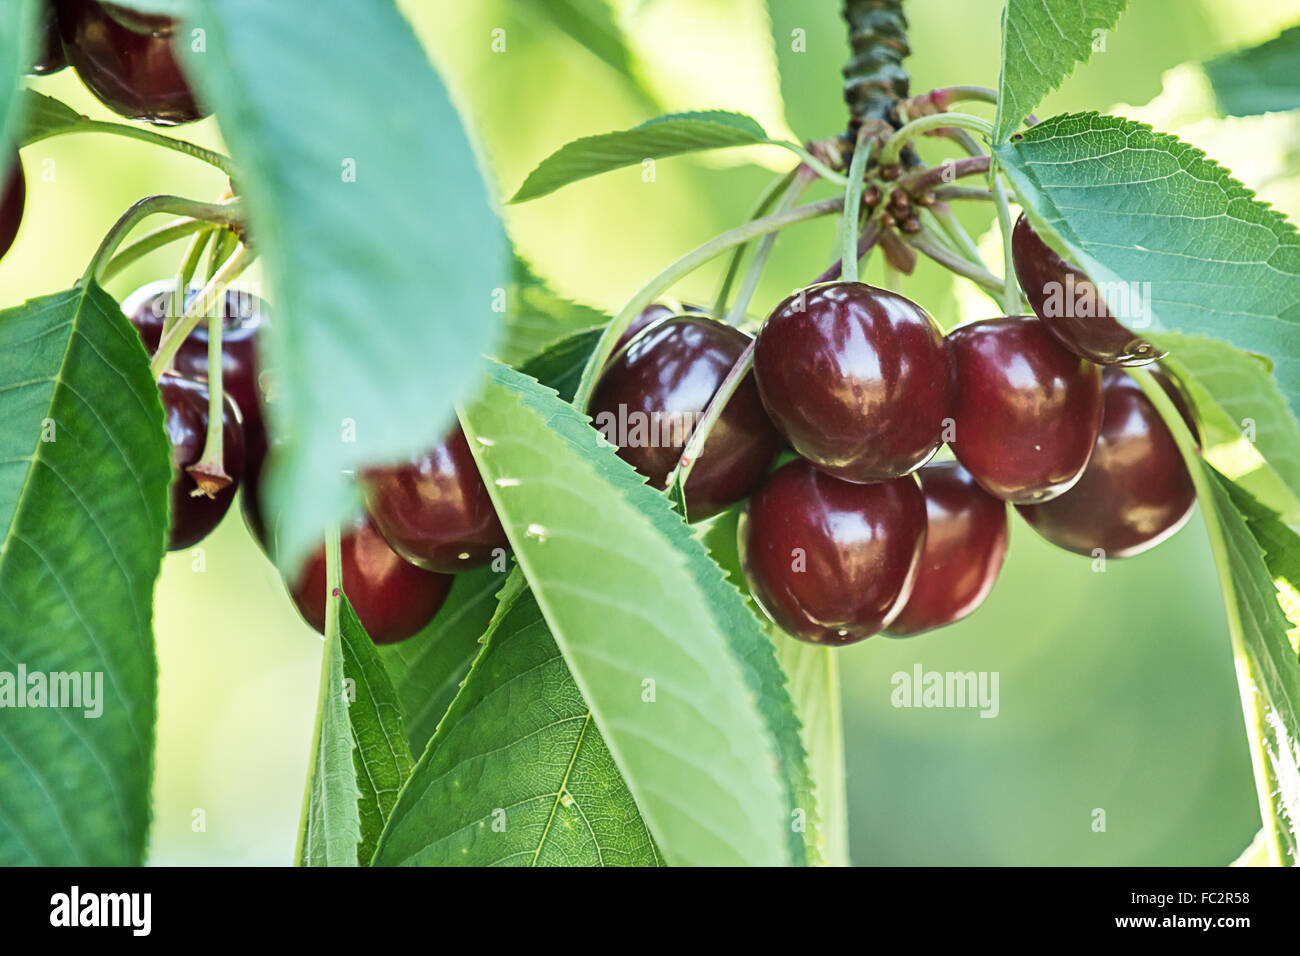 fresh and ripe sweet cherries (prunus avium) Stock Photo